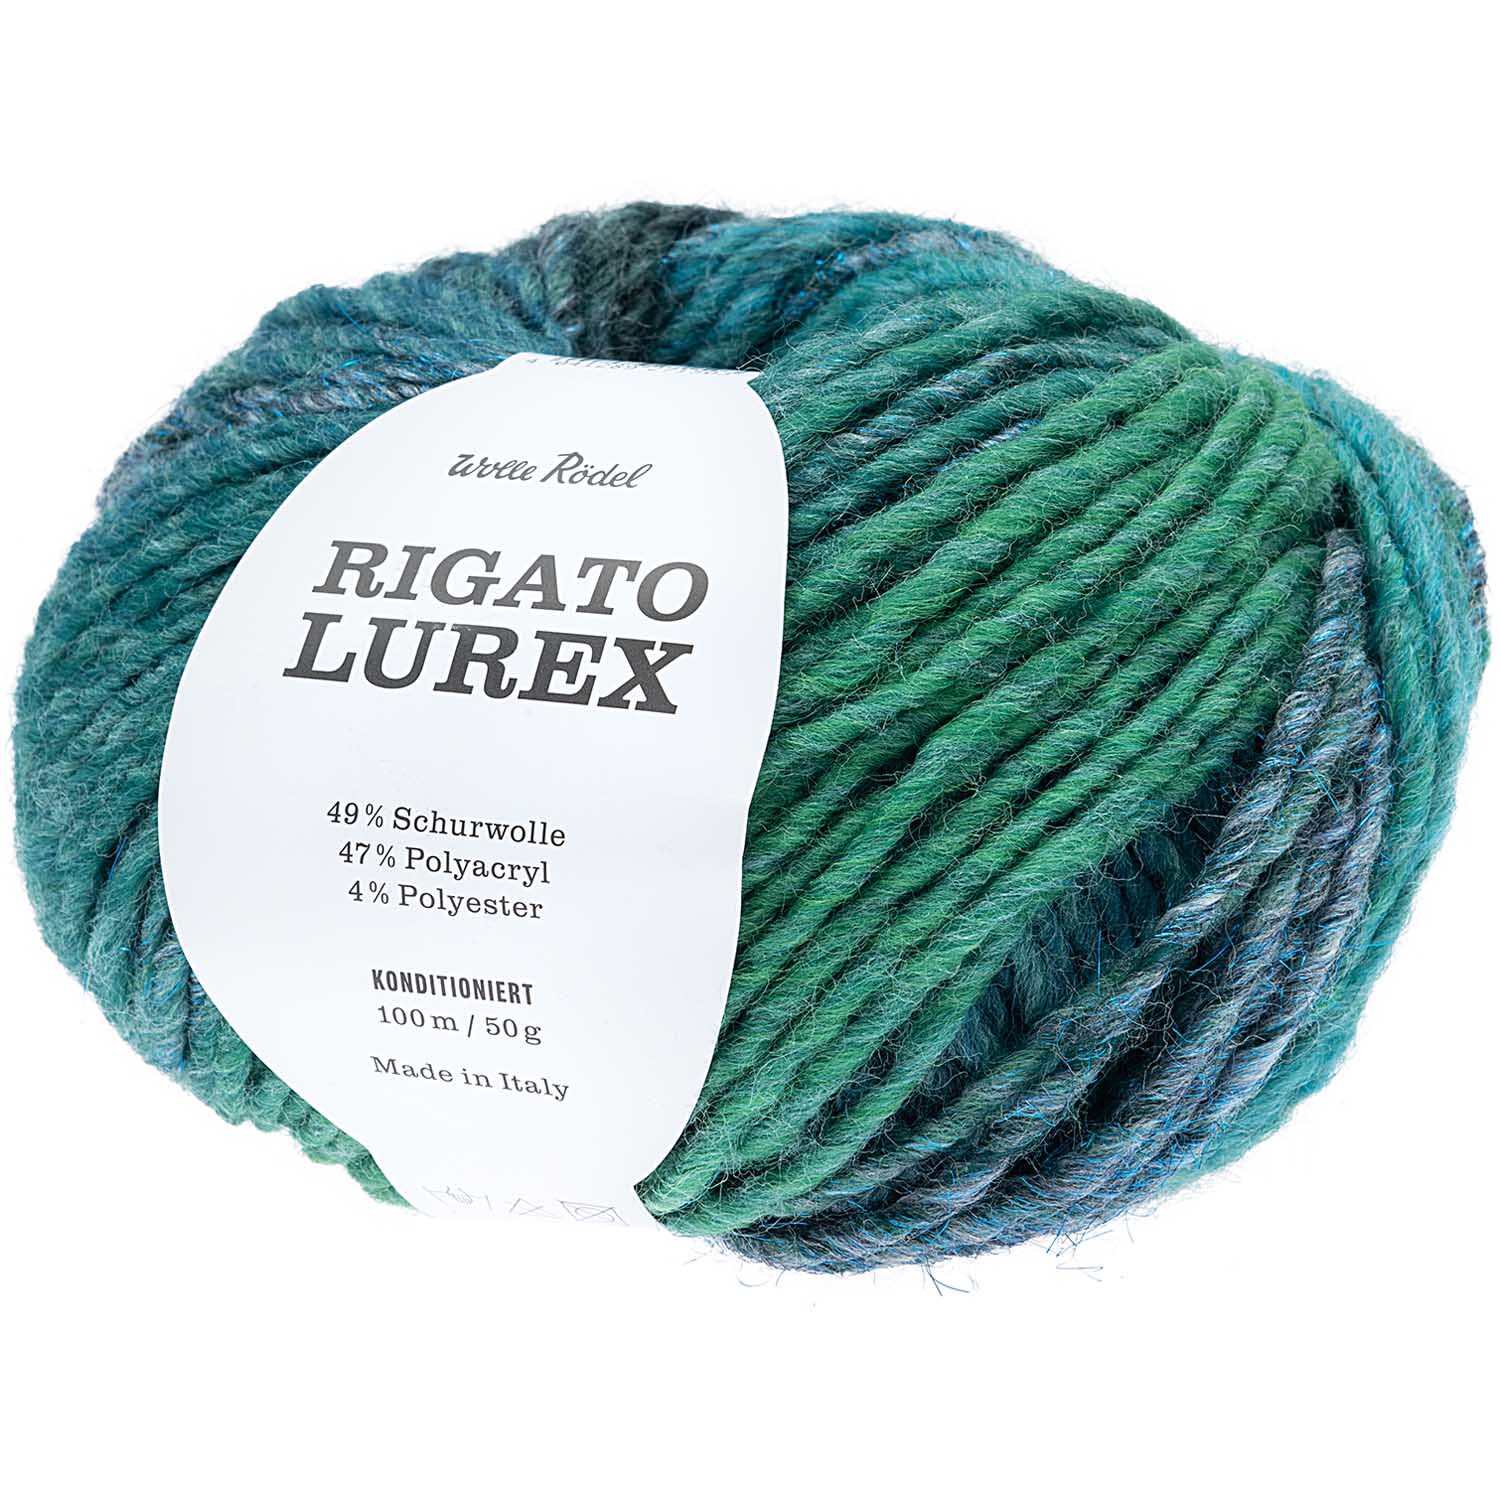 Rigato Lurex grün